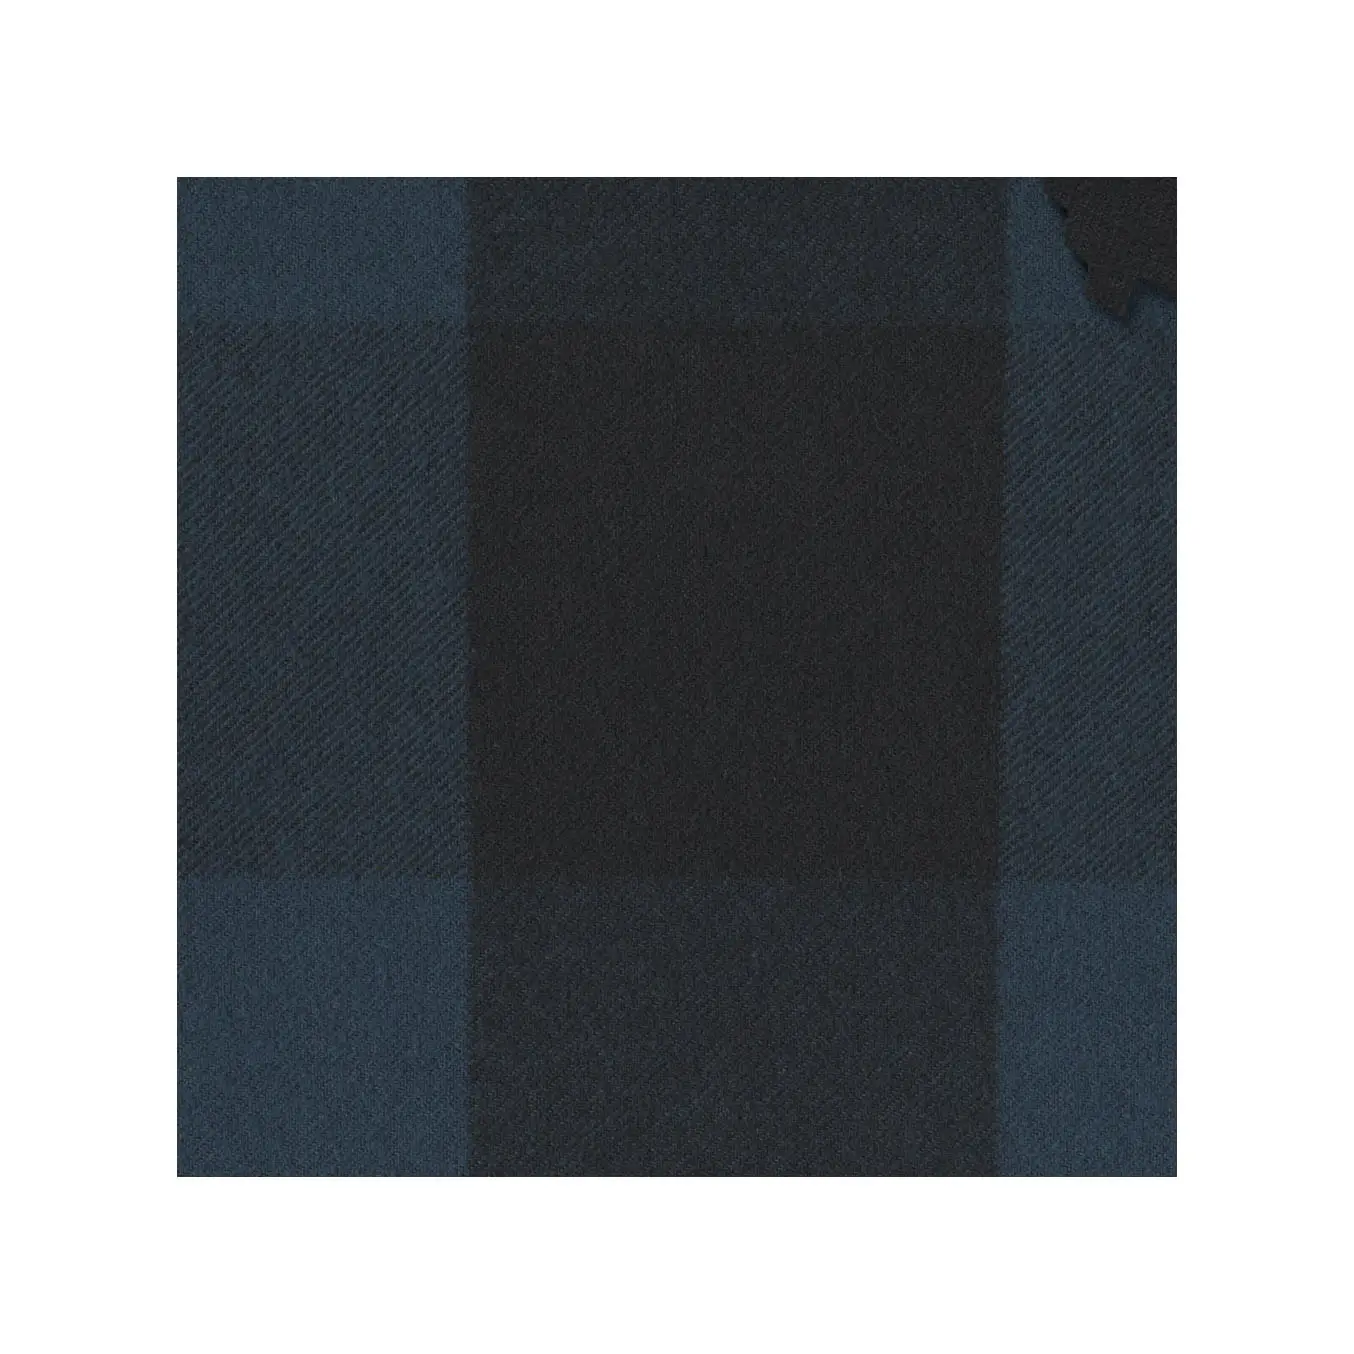 사용자 정의 순수 코튼 원단 원사 염색 중간 무게 짠 코튼 격자 무늬 플란넬 셔츠